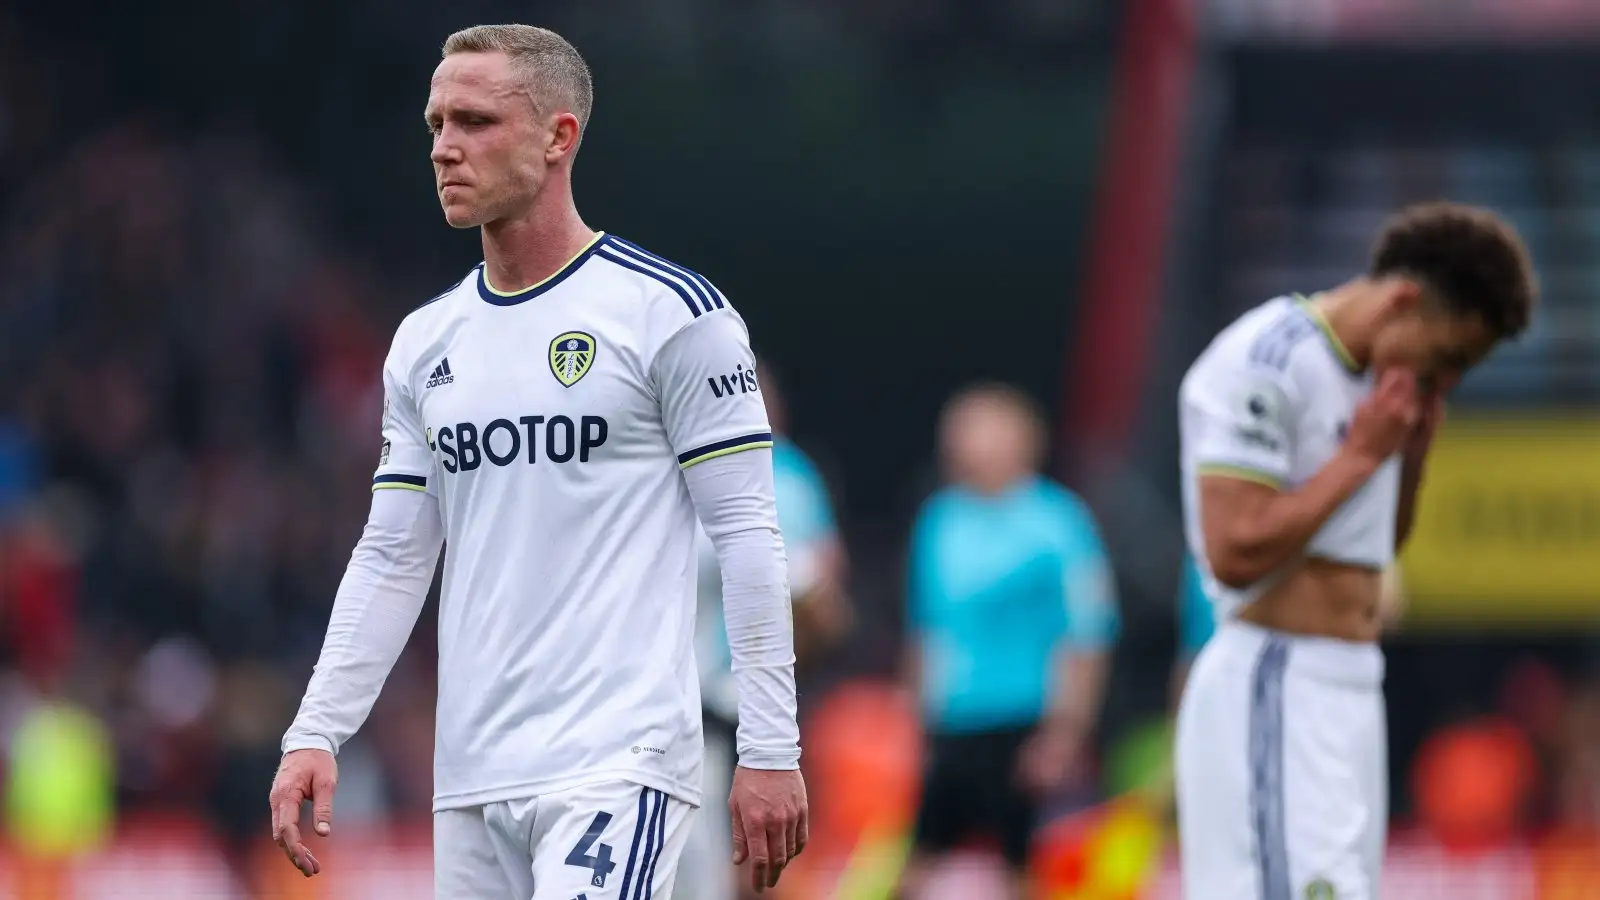 Leeds midfielder Adam Forshaw looks dejected